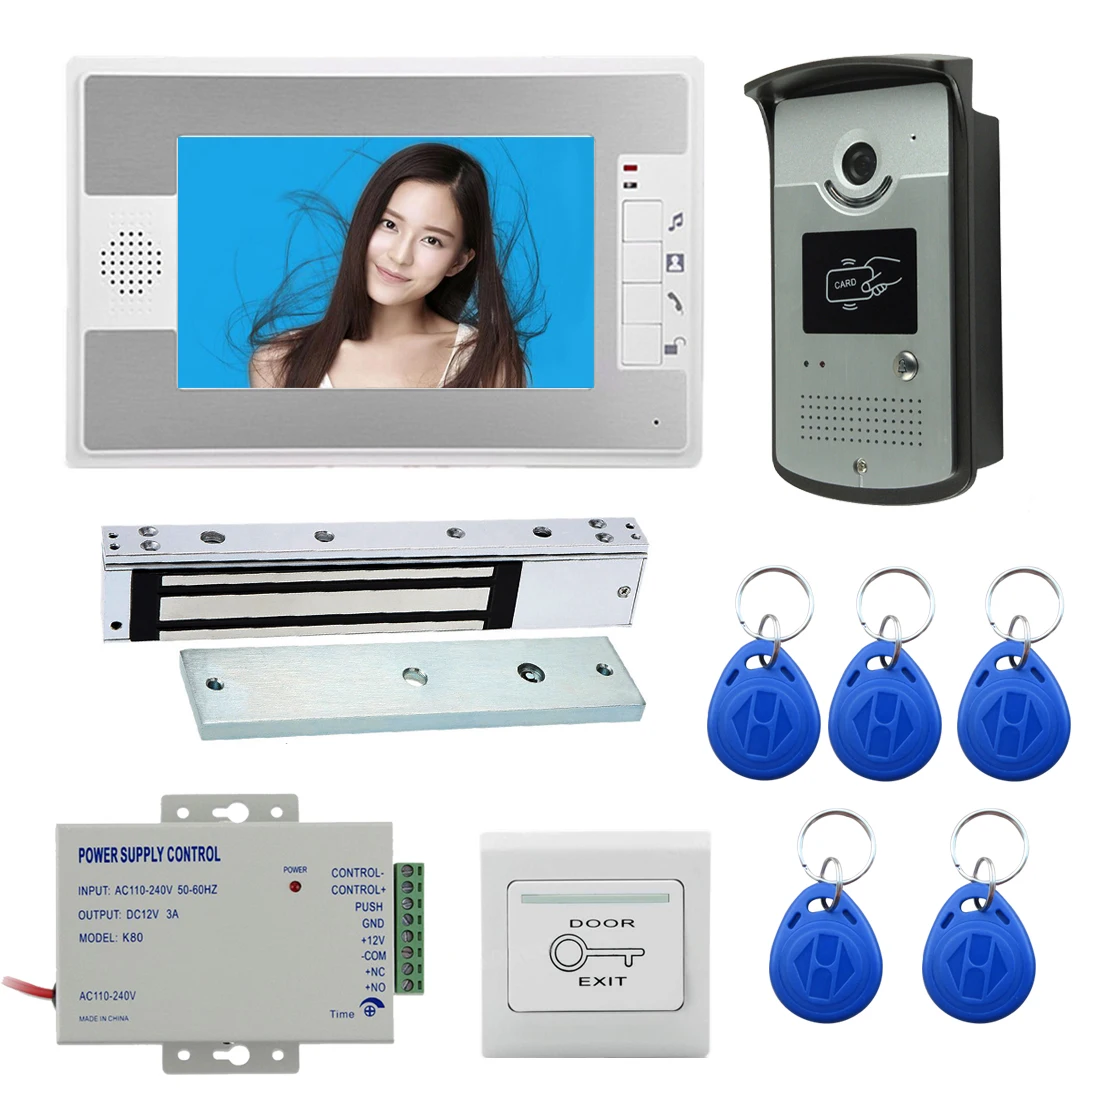 

7"Video Door Intercom Indoor Monitor Interphone For Villa Private Home Security Home Security Video Doorphone Doorbell